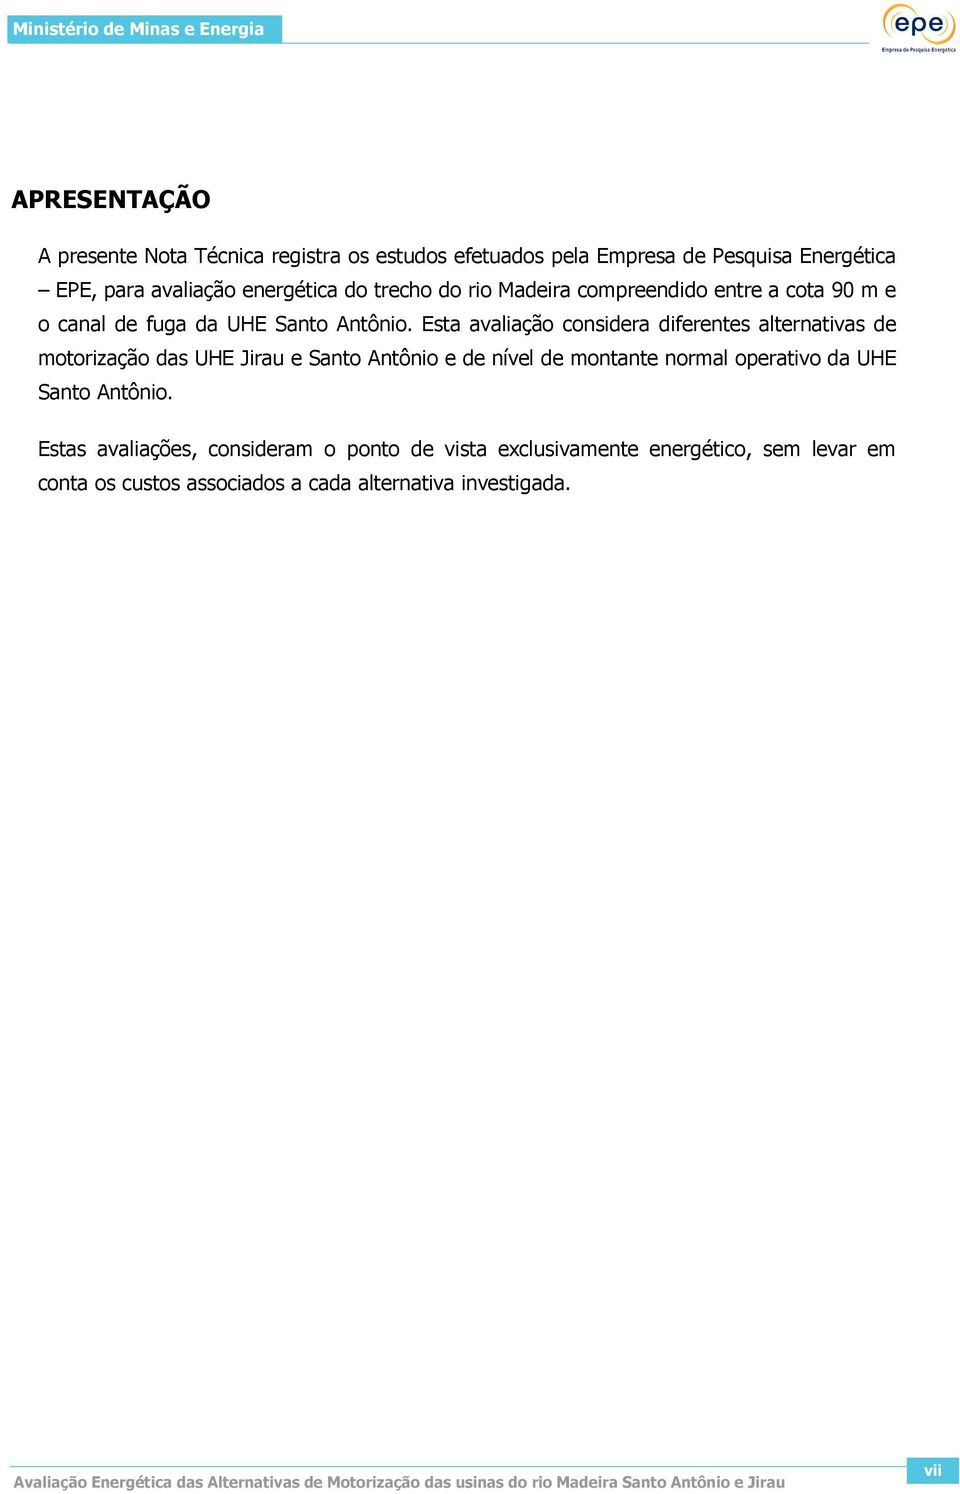 Esta avaliação considera diferentes alternativas de motorização das UHE Jirau e Santo Antônio e de nível de montante normal operativo